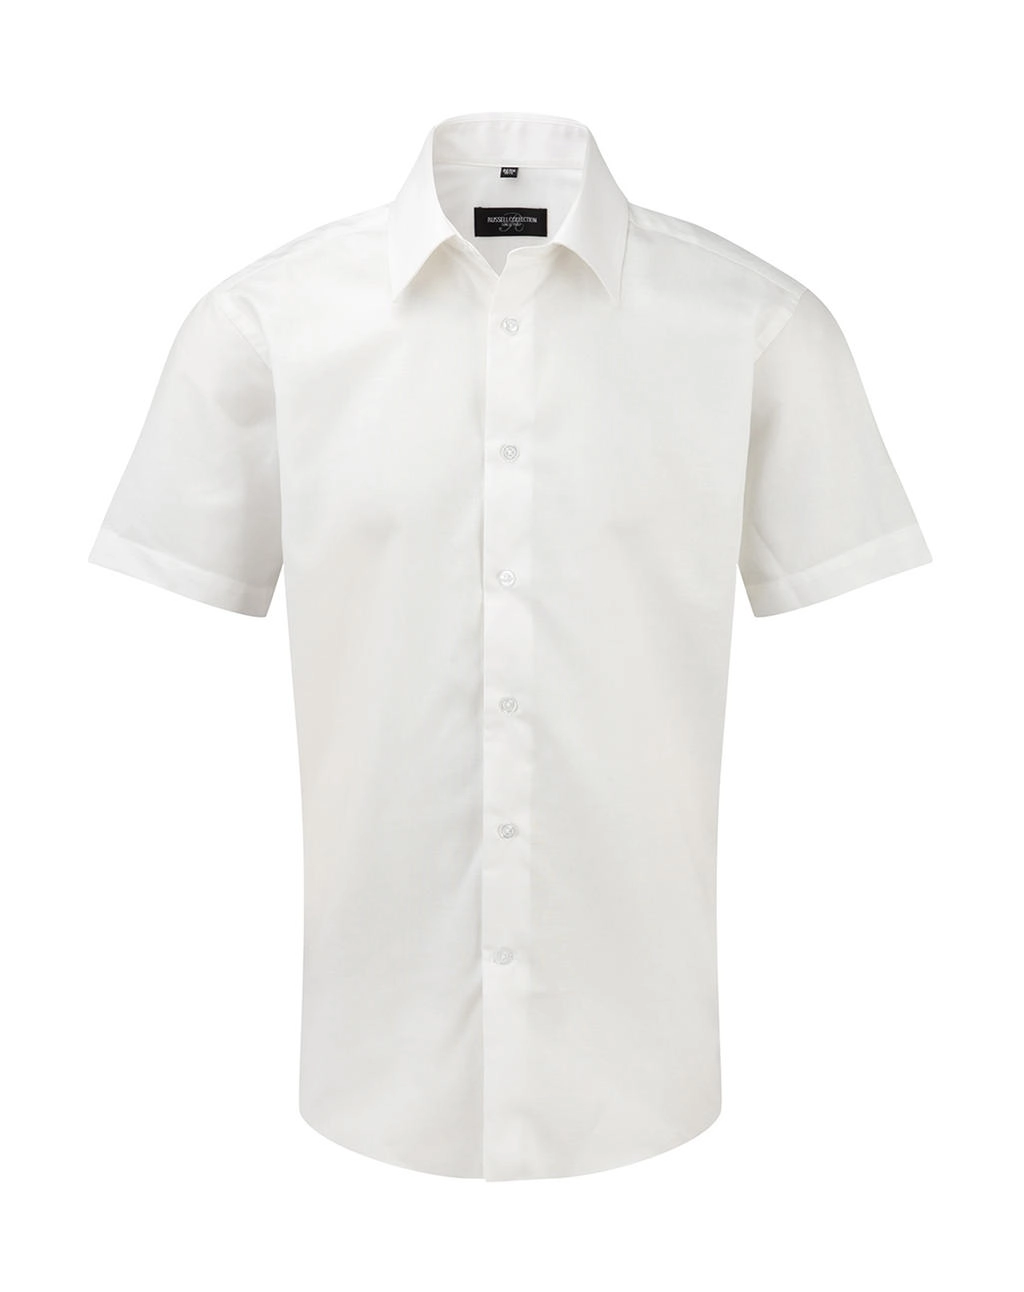 Oxford Shirt zum Besticken und Bedrucken in der Farbe White mit Ihren Logo, Schriftzug oder Motiv.